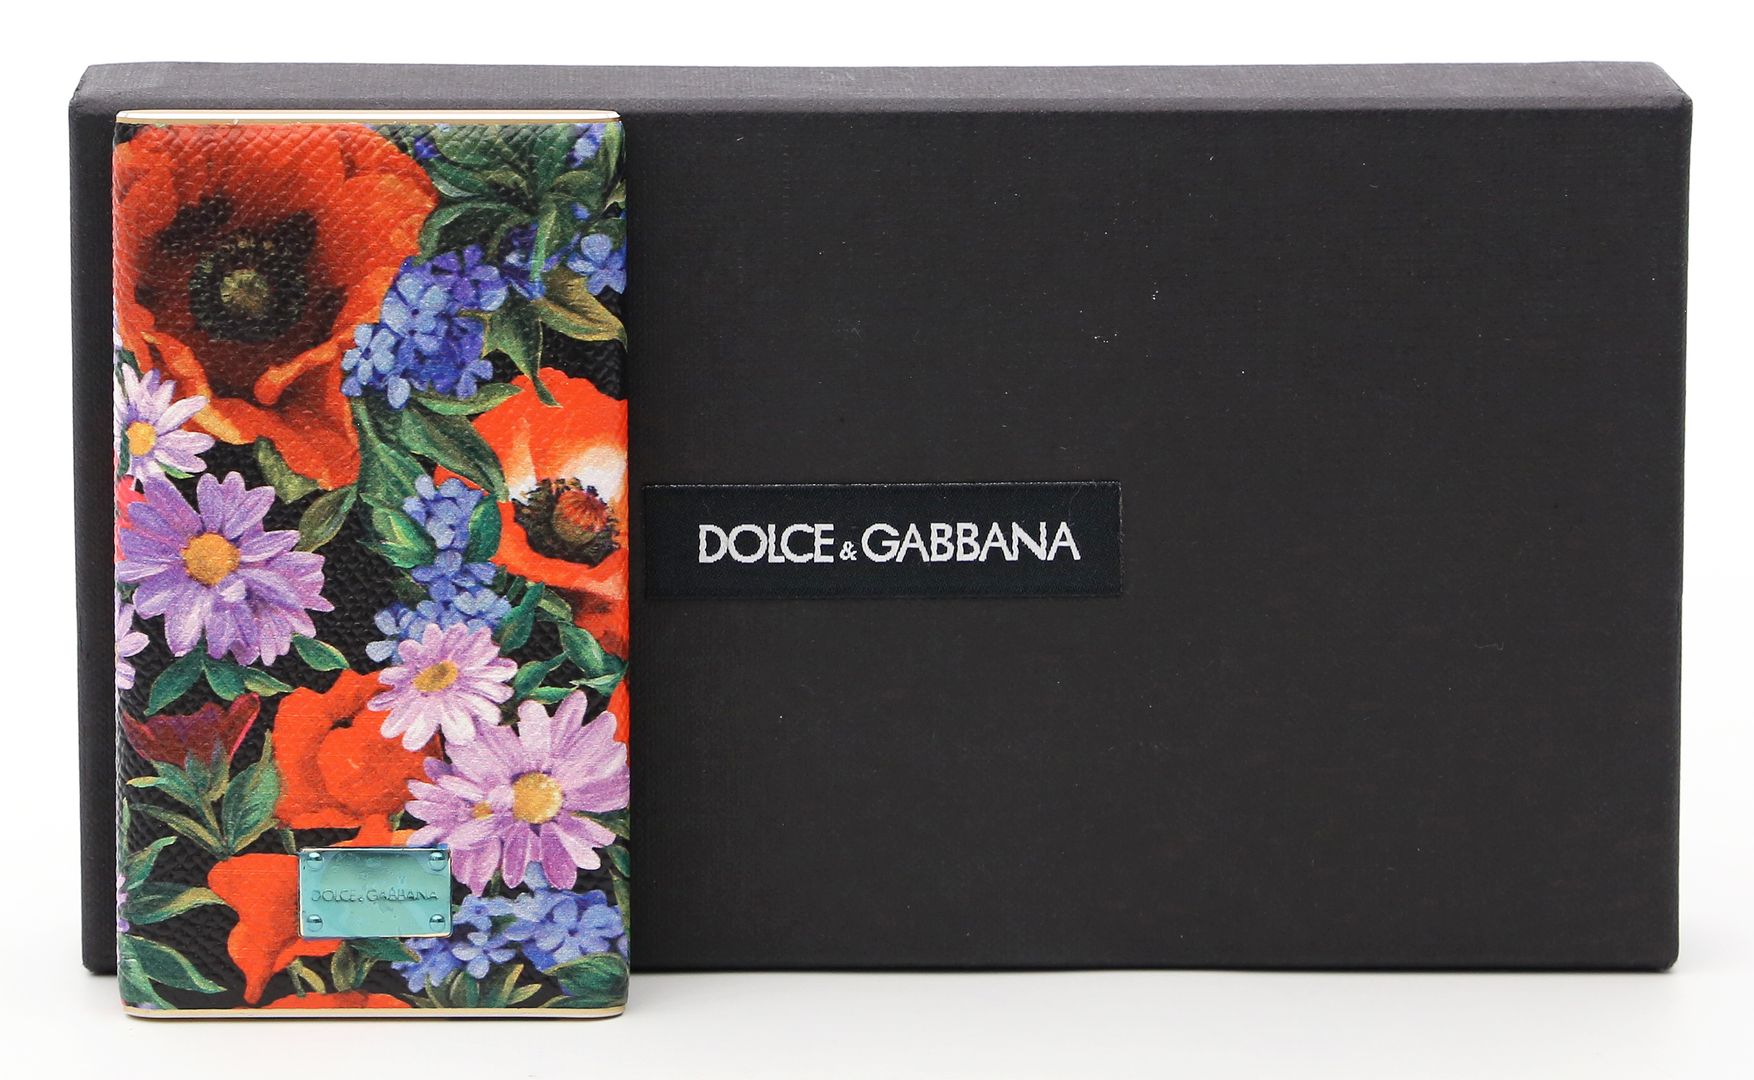 Power Bank, Dolce & Gabbana.